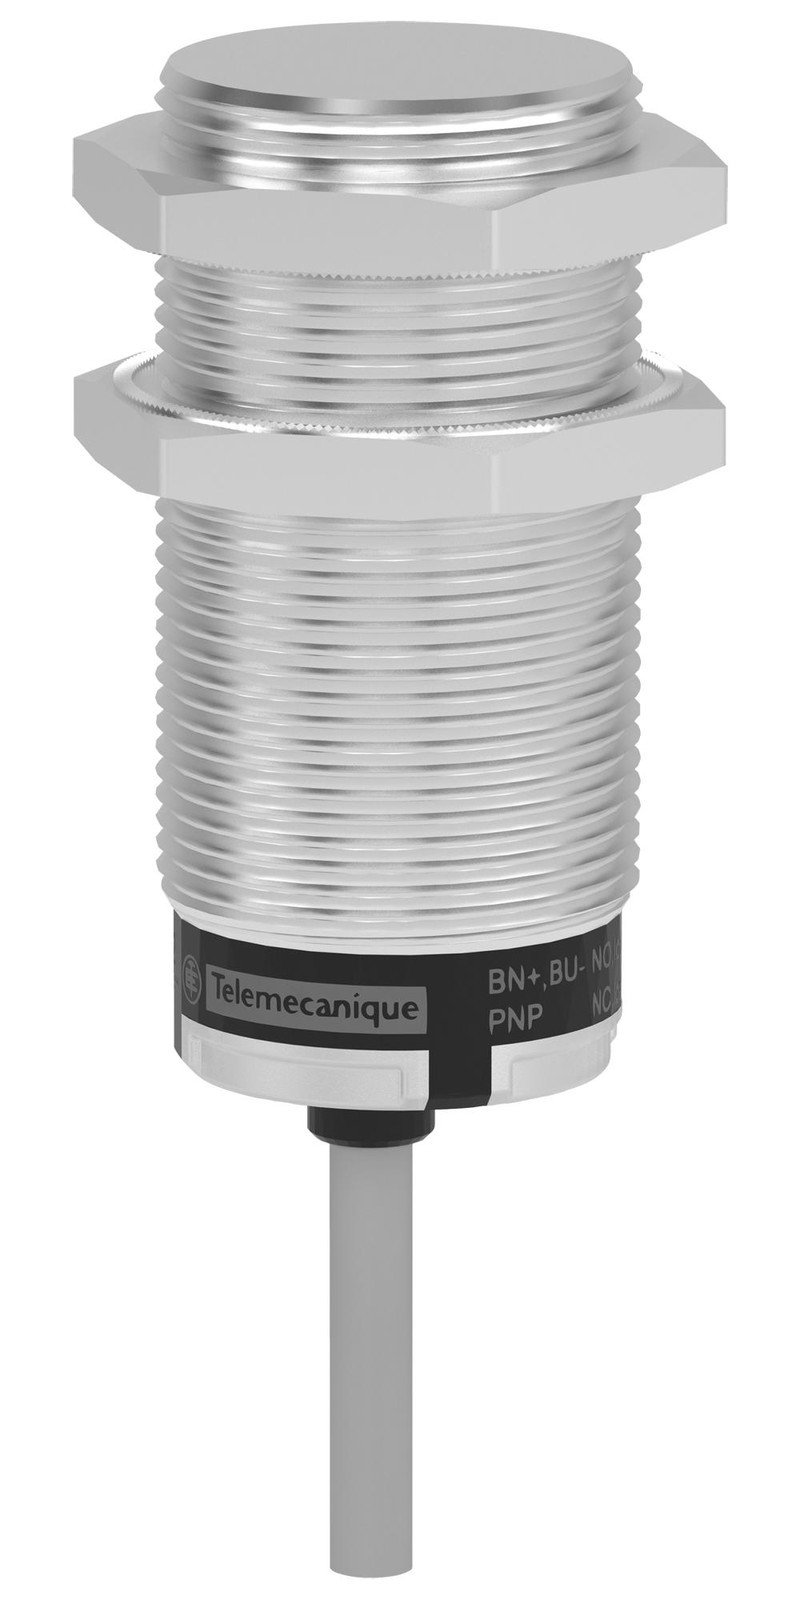 Telemecanique Sensors Xt530B1Fbl2 Sensor, Capacitor Proximity, 10mm, 240Vac